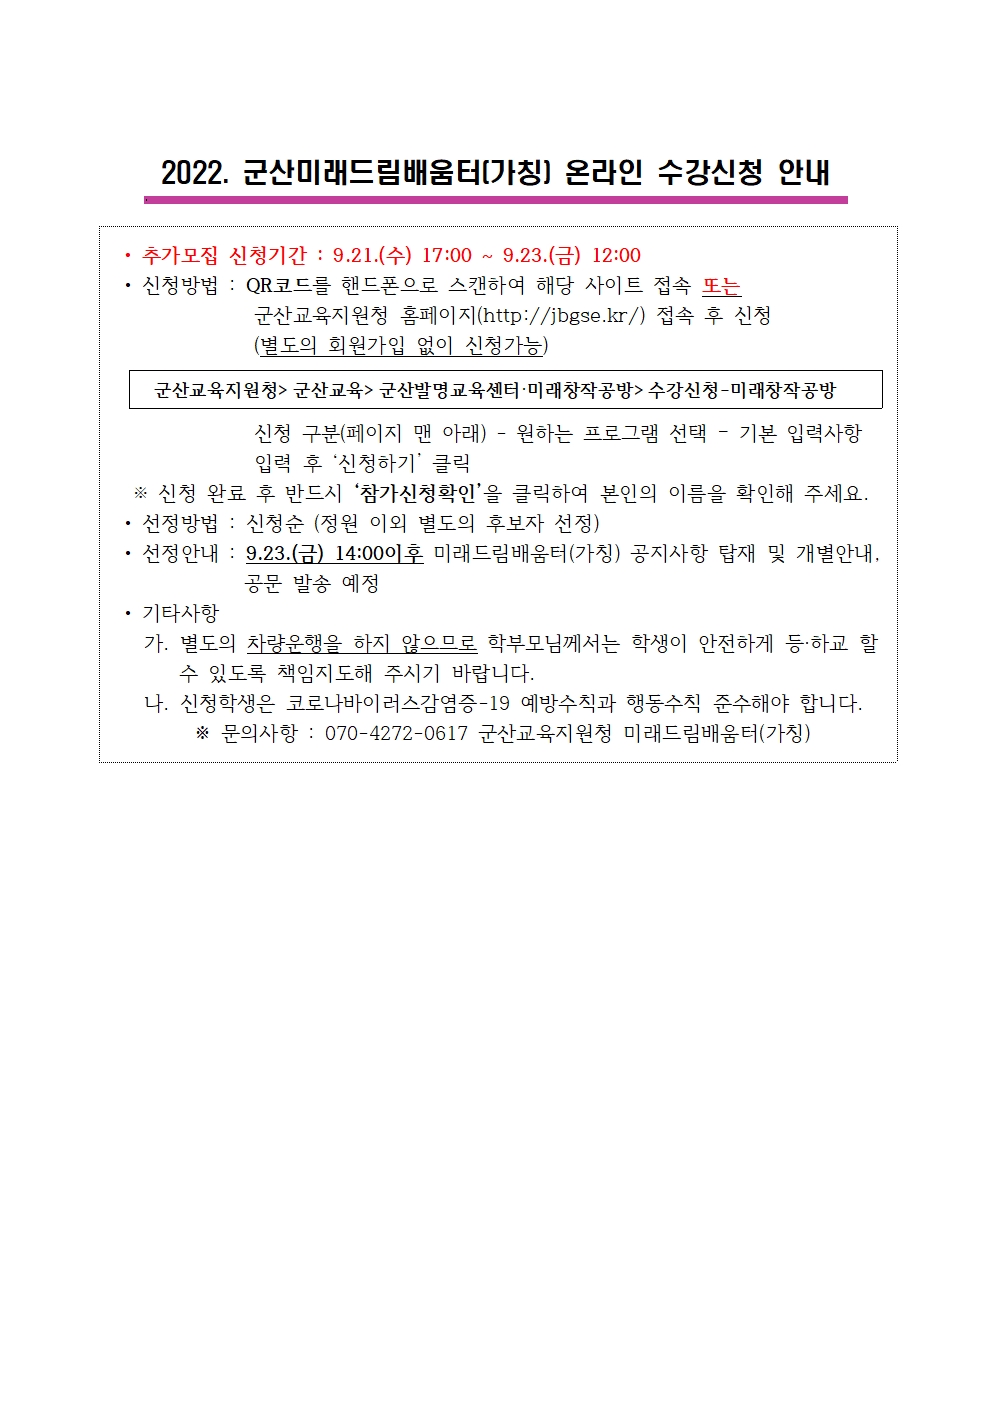 2022. 군산미래드림배움터(가칭) 2학기 특별과정 추가모집 가정통신문002